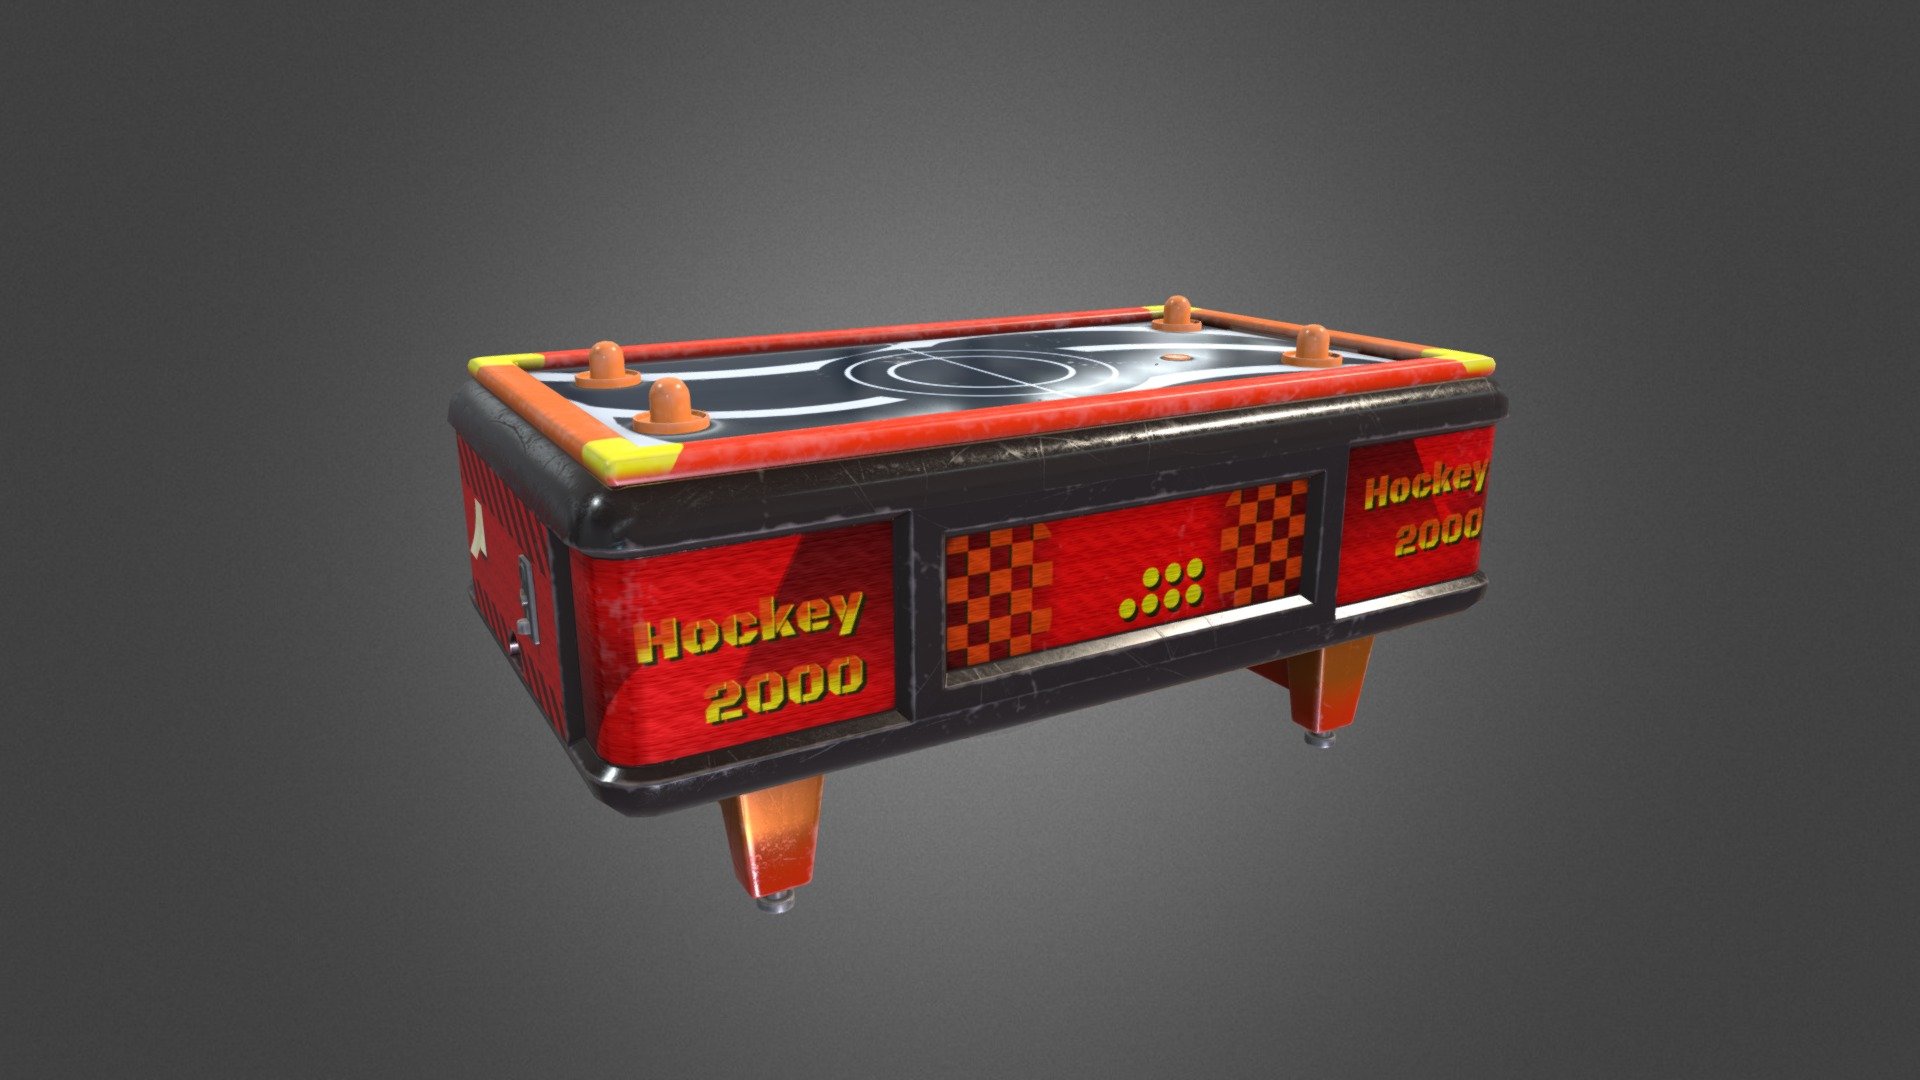 桌上曲棍球機台
飛碟球
Air Hockey Table - Air Hockey Table - 3D model by Ing_eO 3d model